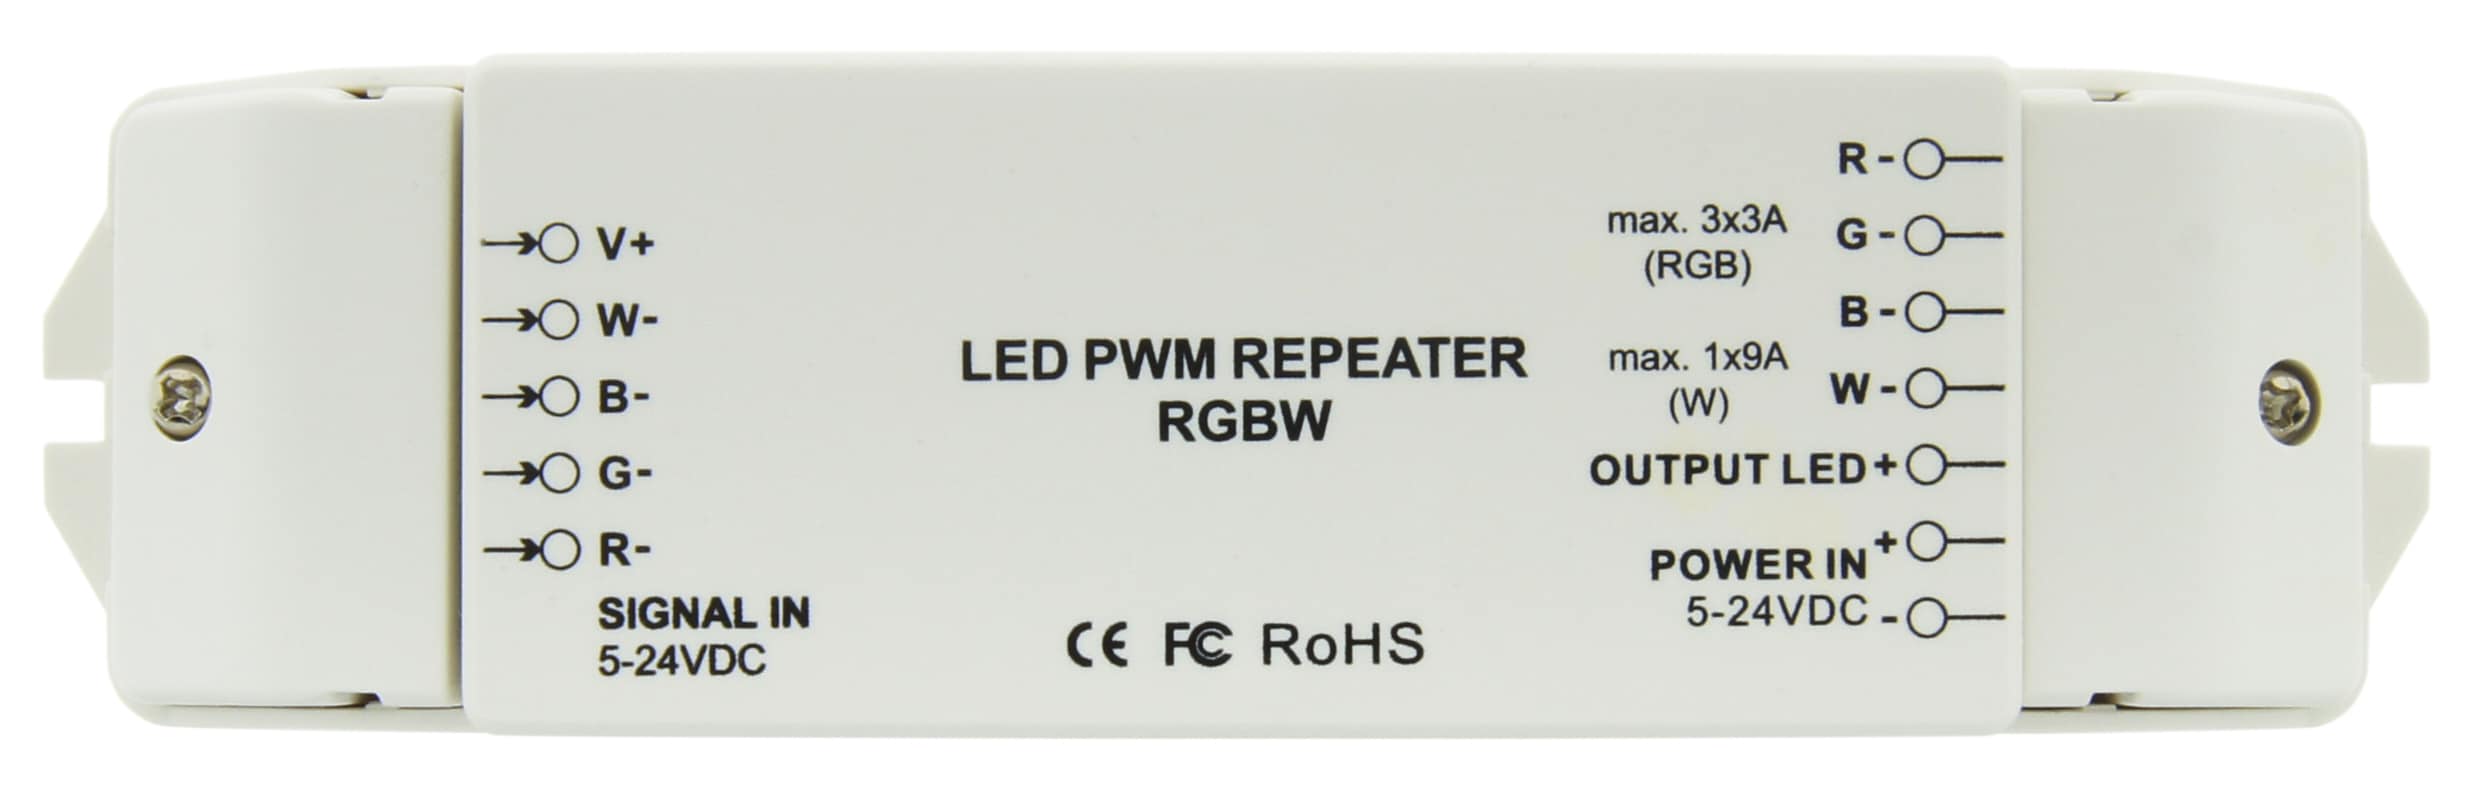 https://autled.com/daten/foto/Produktfoto_LED-PWM-Repeater-RGBW_1_v1.jpg